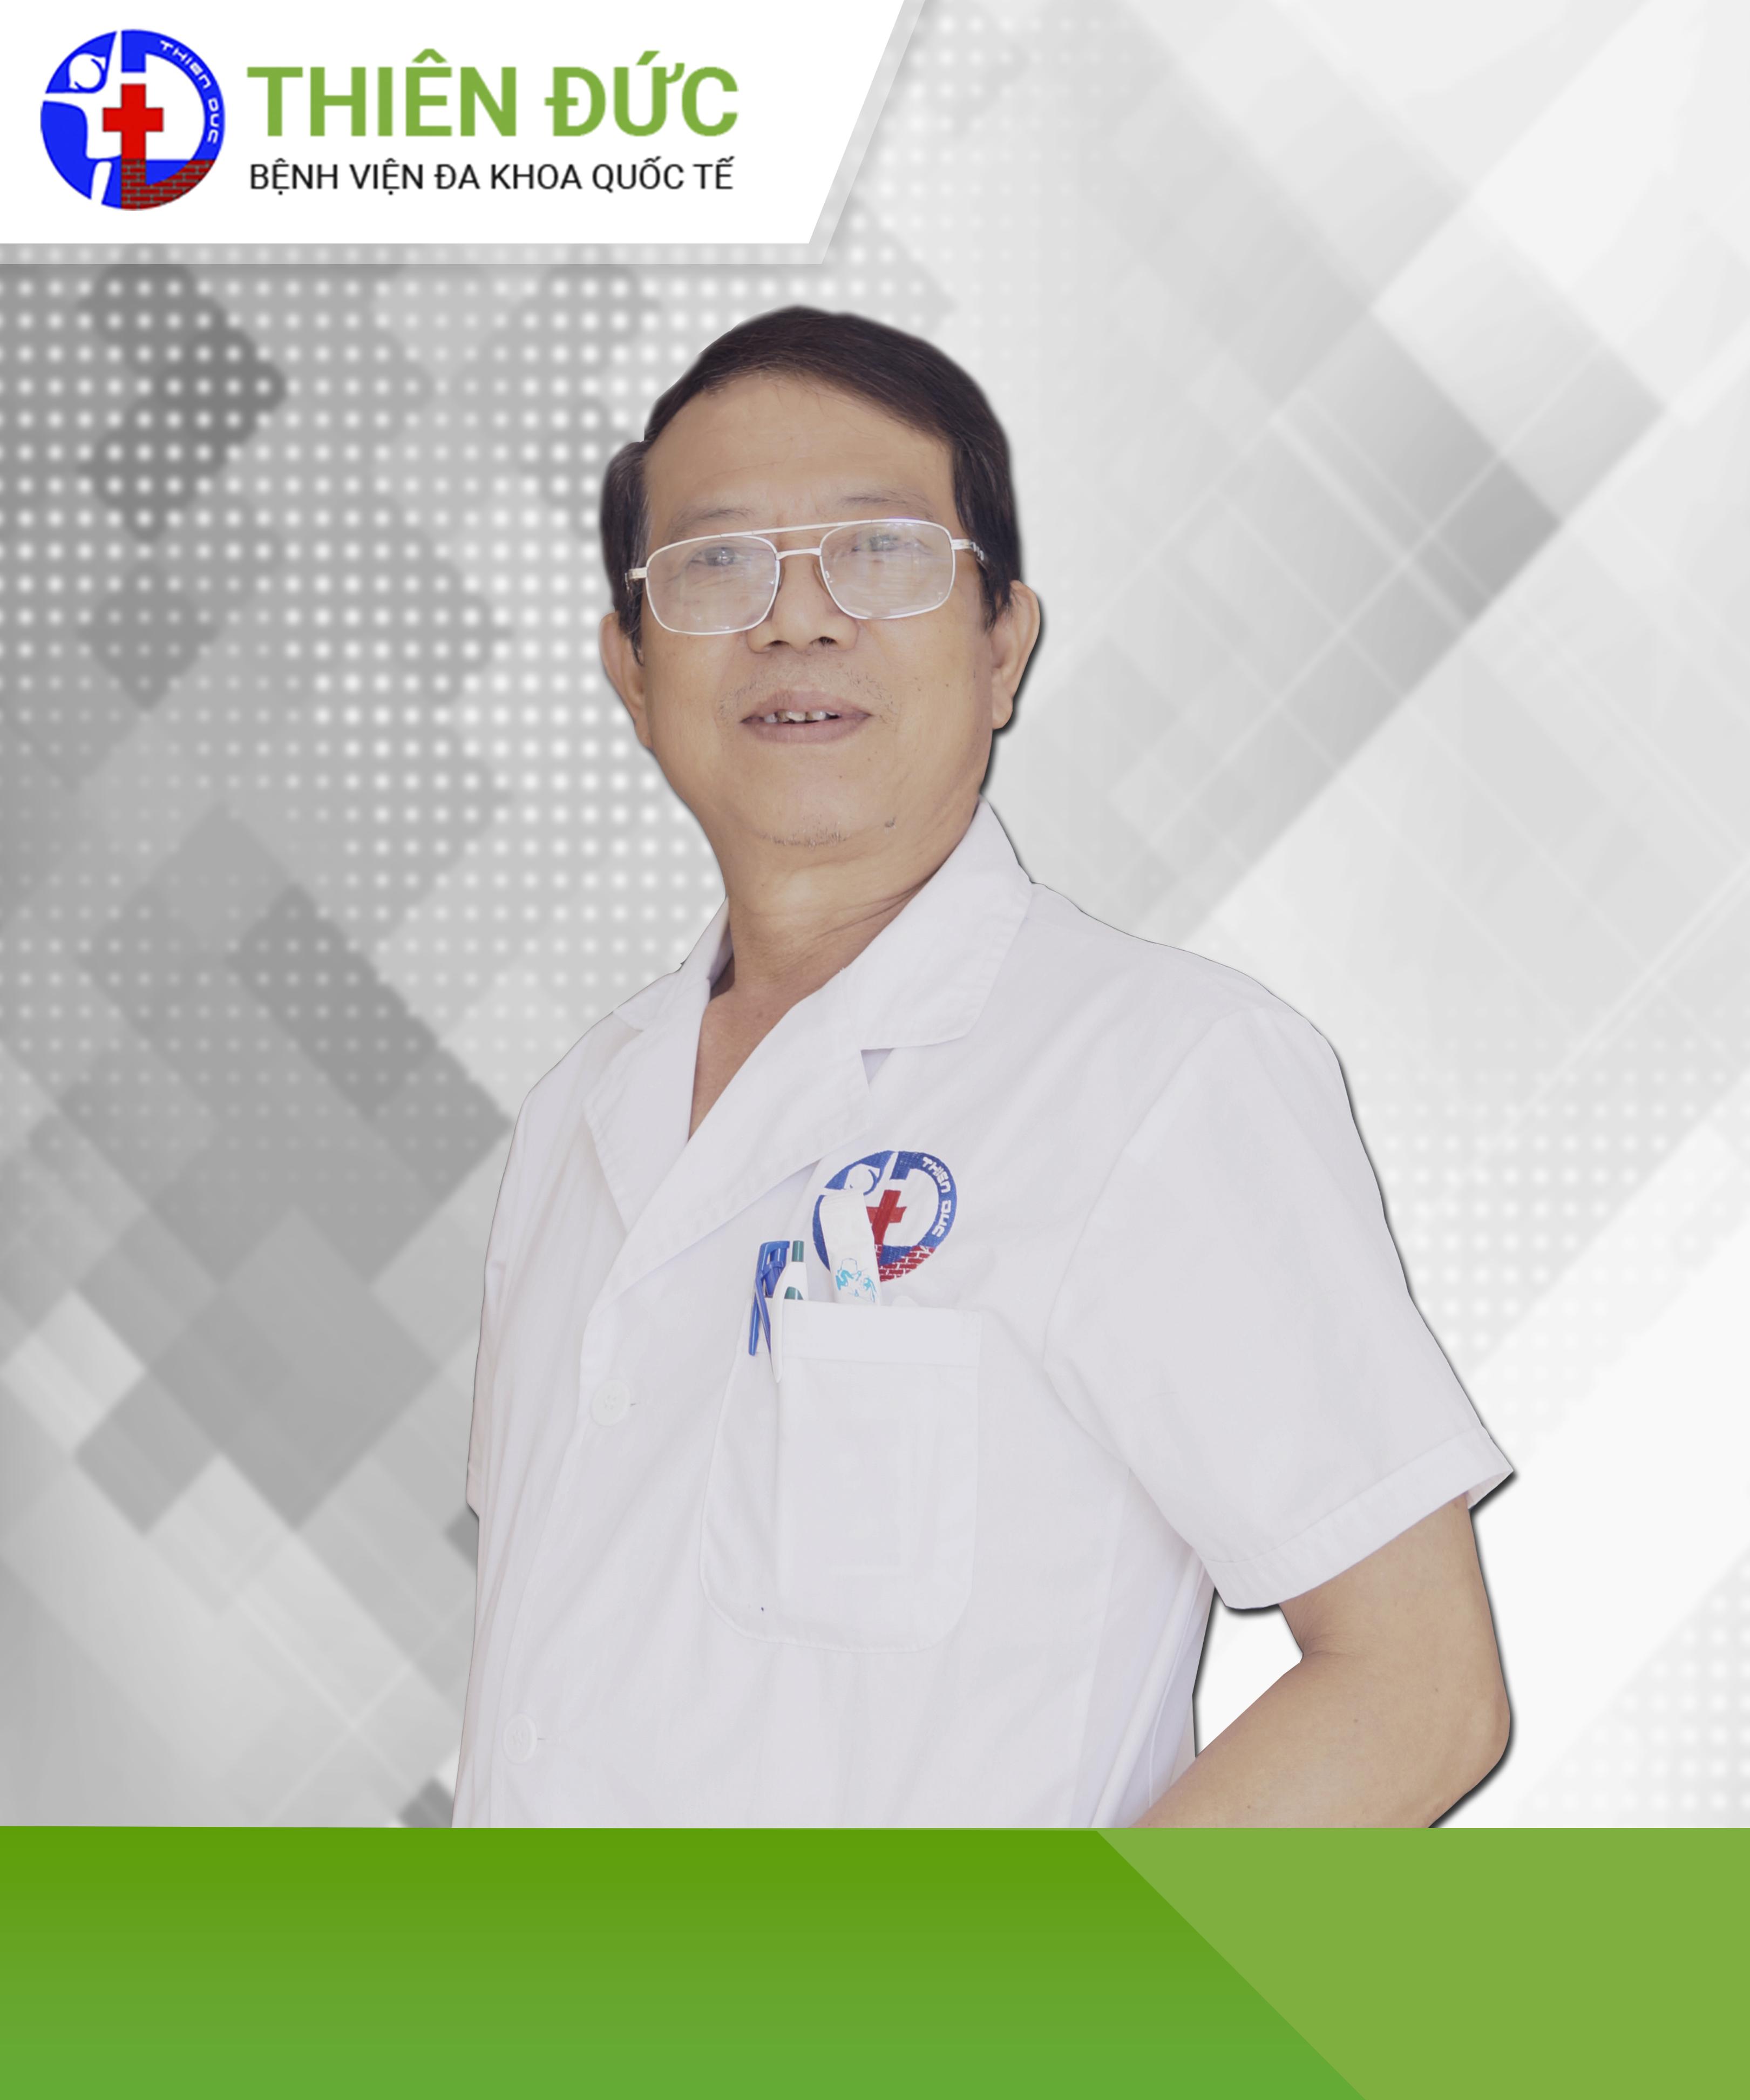 Bác sĩ Nguyễn Mạnh Hồng